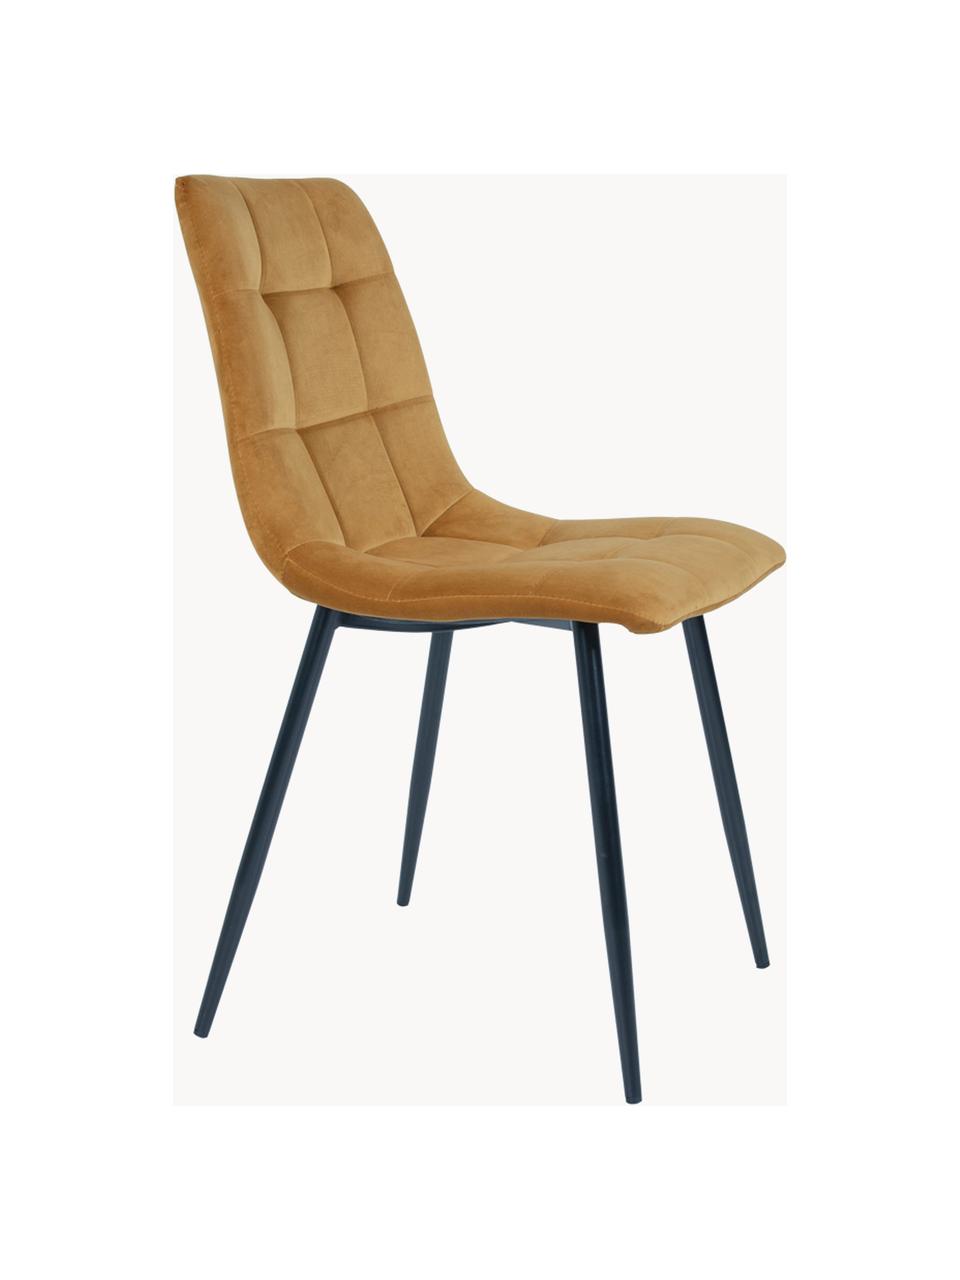 Krzesło tapicerowane z aksamitu Middleton, Tapicerka: aksamit Dzięki tkaninie w, Nogi: metal lakierowany, Musztardowy aksamit, S 44 x G 55 cm